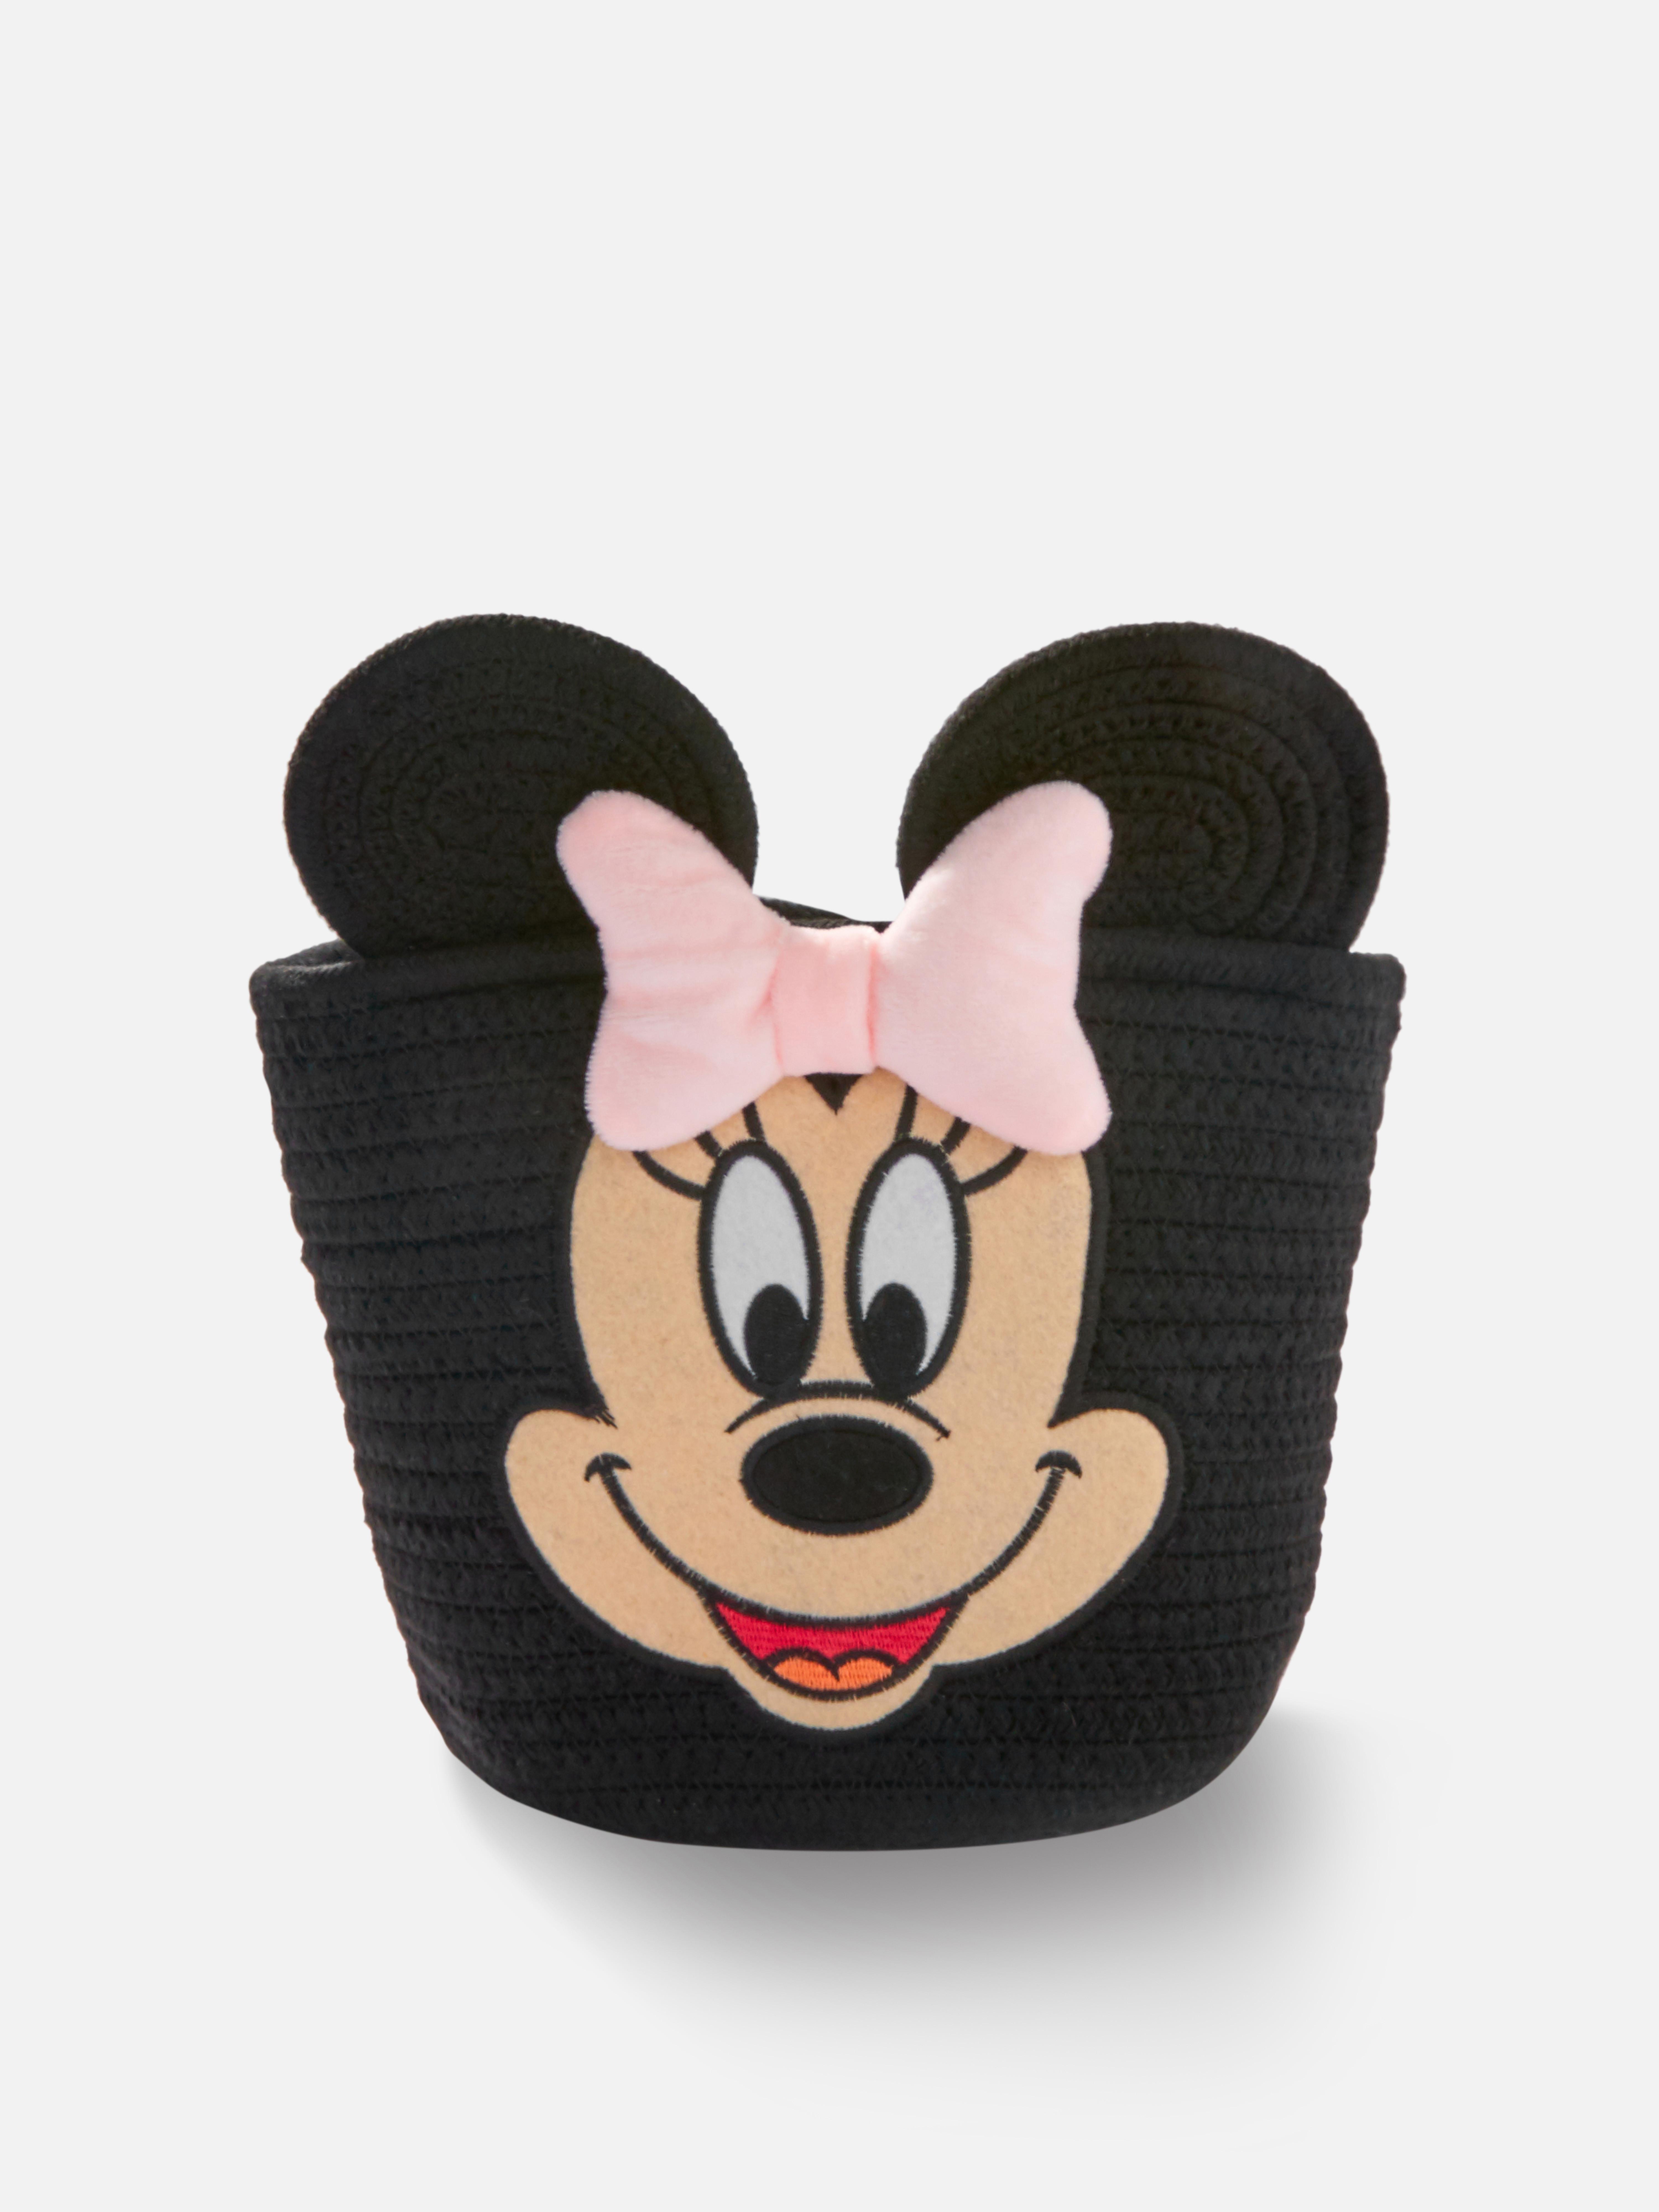 Disney's Minnie Mouse Storage